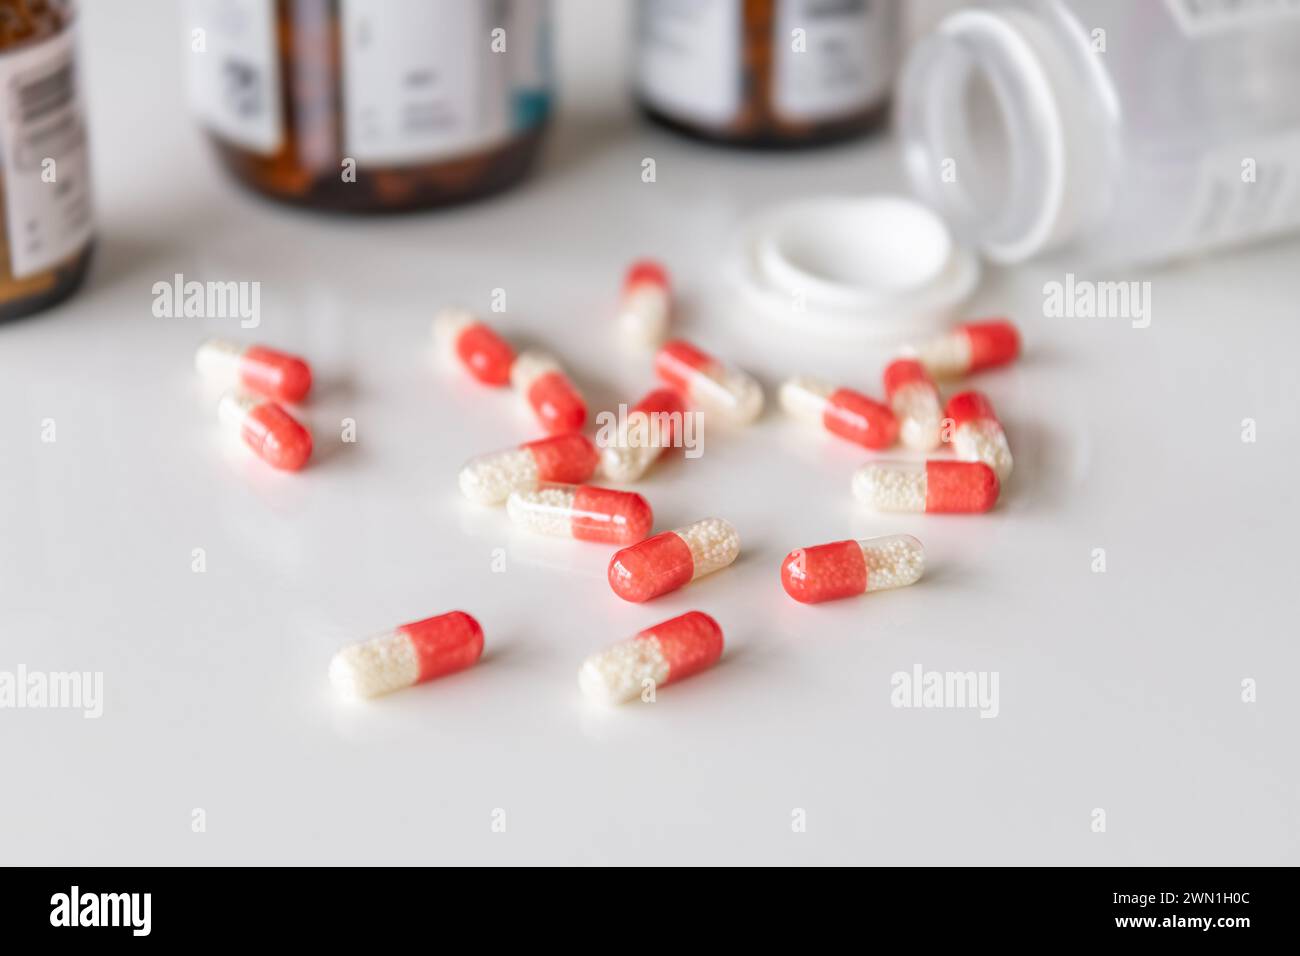 Píldoras medicinales, medicamentos en diferentes colores dispuestos sobre un fondo blanco. Concepto médico de atención de la salud humana. Foto de stock